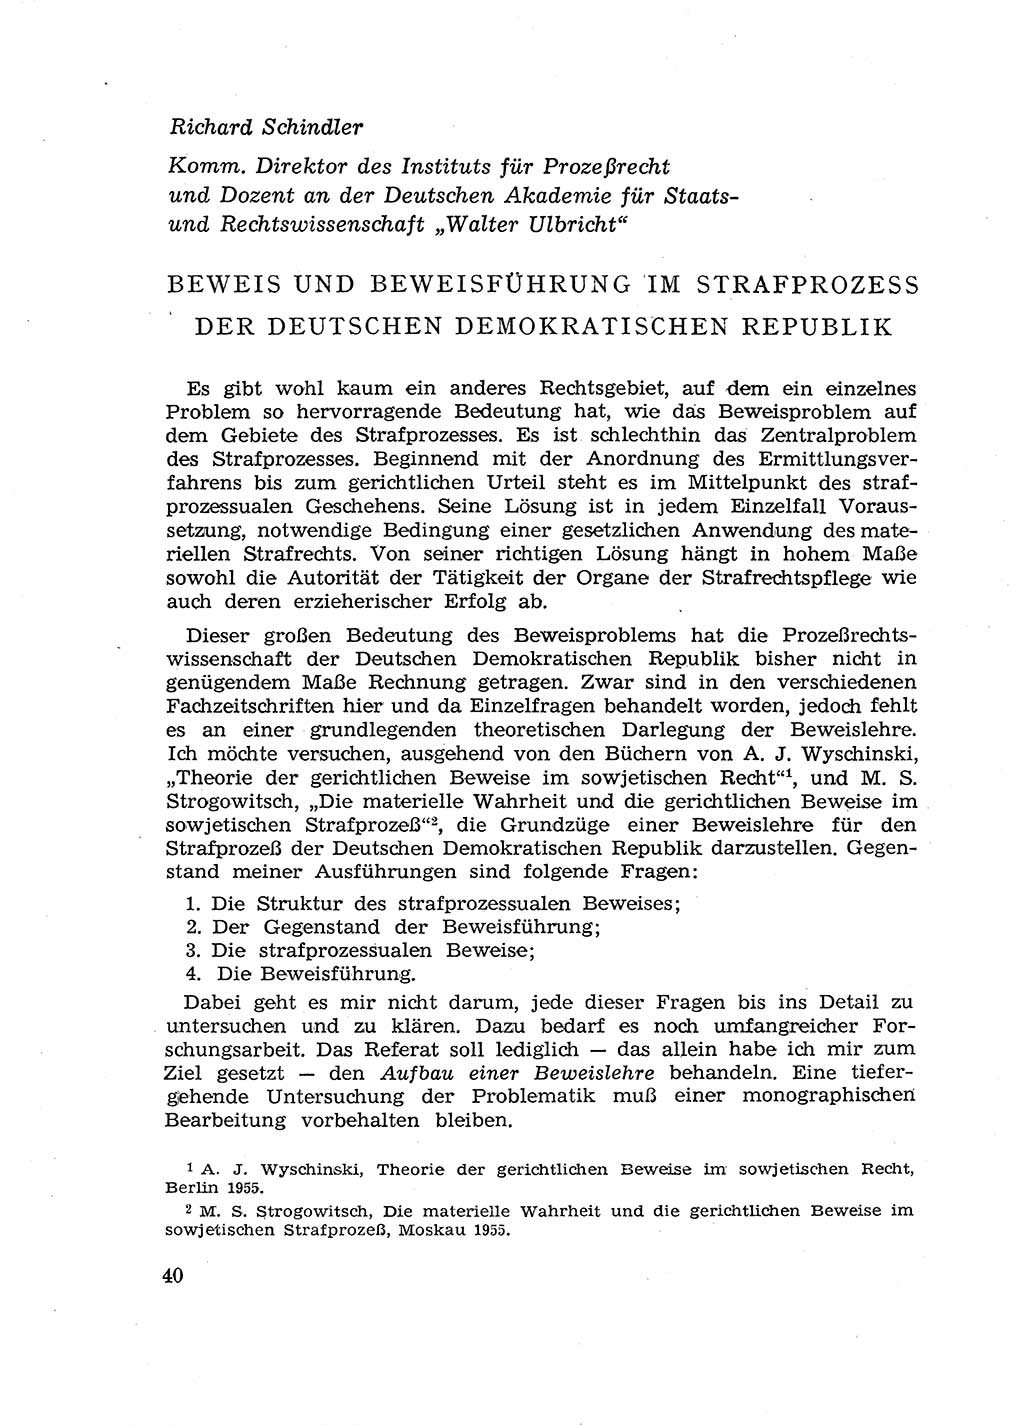 Fragen des Beweisrechts im Strafprozess [Deutsche Demokratische Republik (DDR)] 1956, Seite 40 (Fr. BeweisR. Str.-Proz. DDR 1956, S. 40)